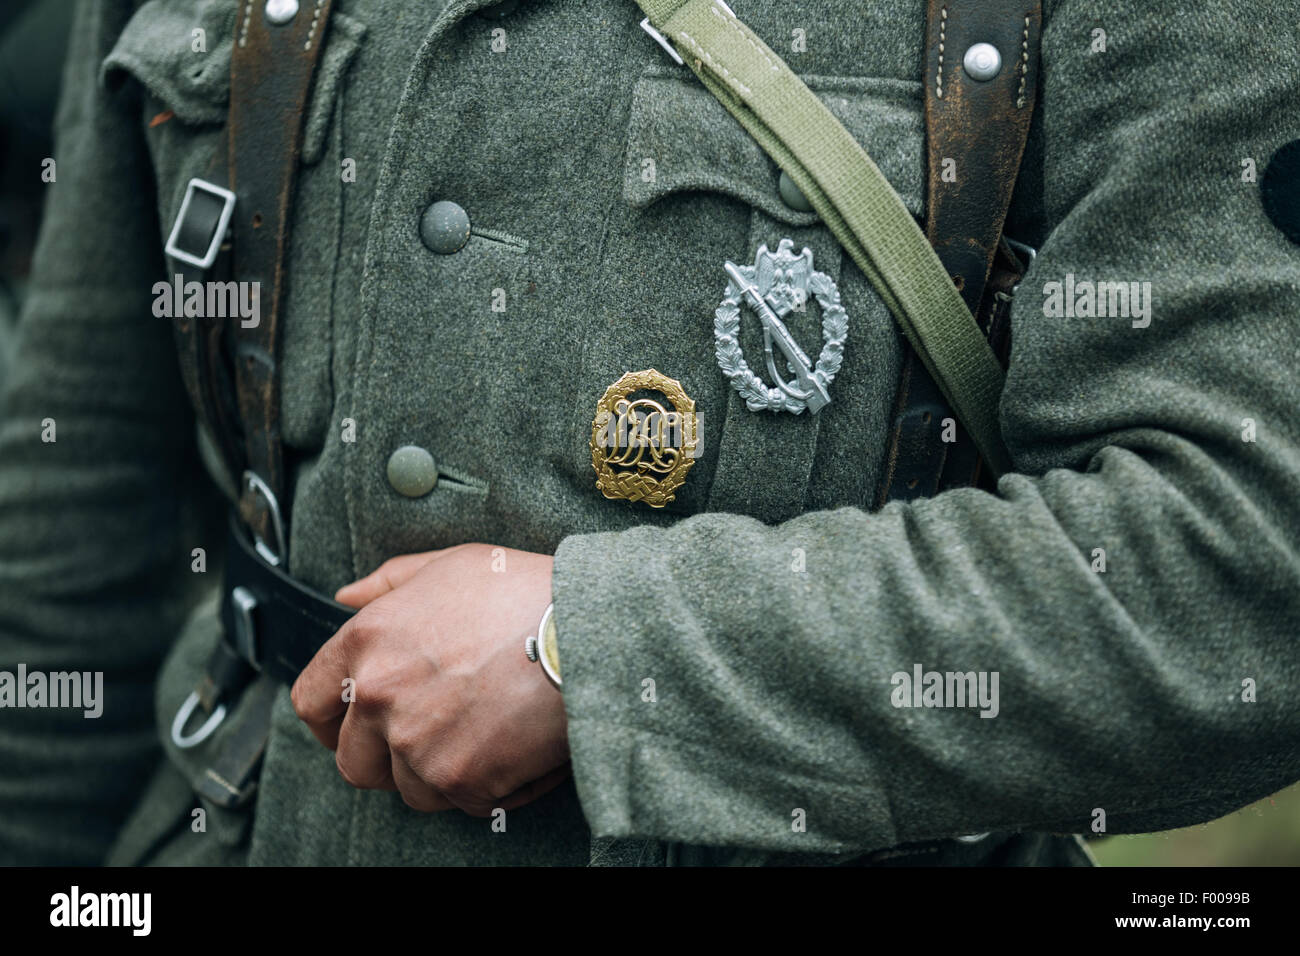 La reconstitution médiévale non identifiés habillés en soldat allemand. Décoration  militaire allemande sur l'uniforme d'un soldat allemand Photo Stock - Alamy